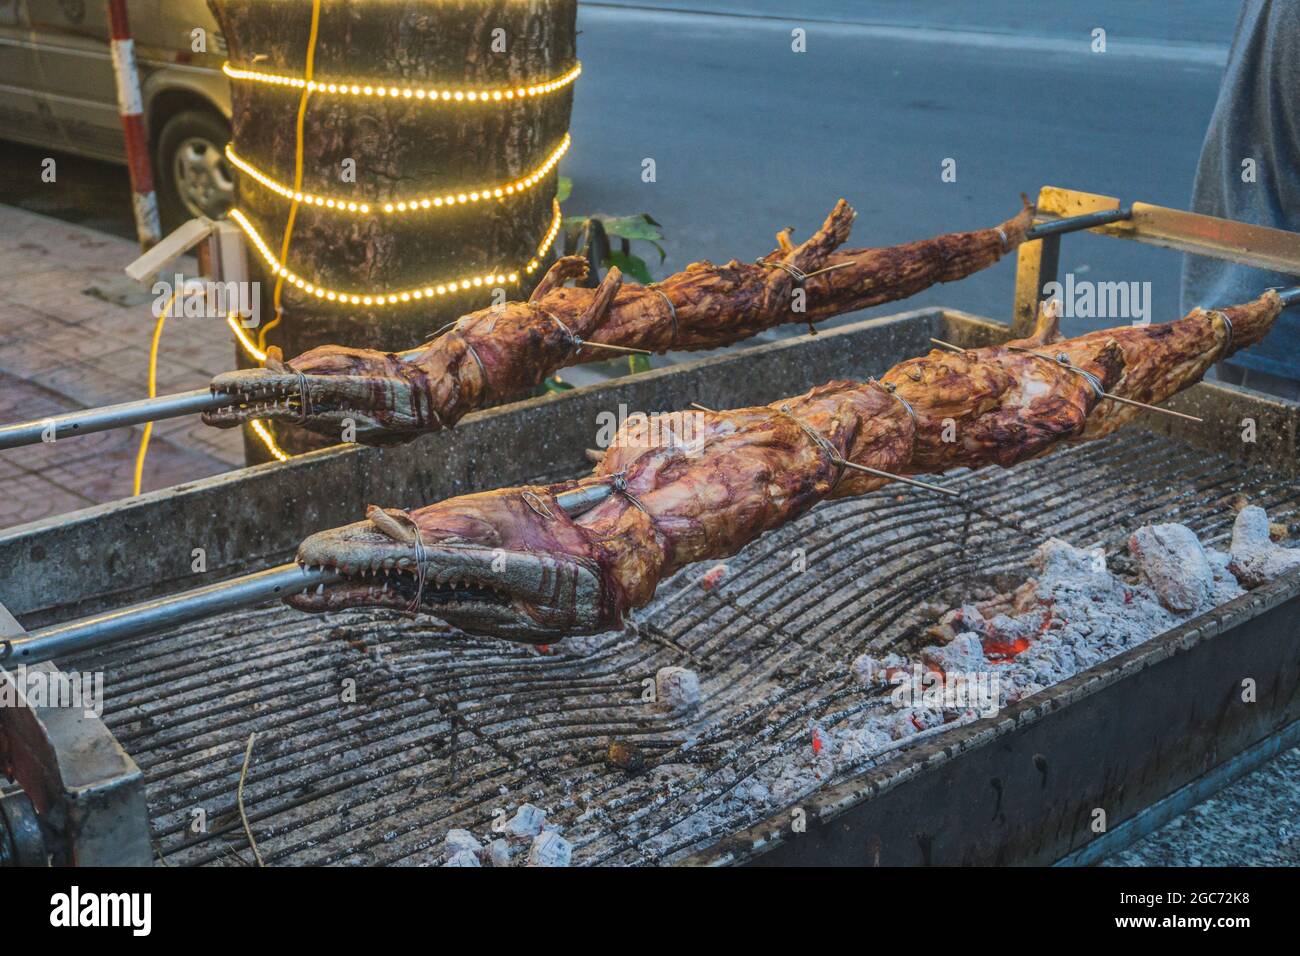 Crocodile grillé sur le feu ouvert au restaurant de la mer, repas exotiques à Viethnam, cuisine asiatique, viande de crocodile crue, plats exotiques. Banque D'Images